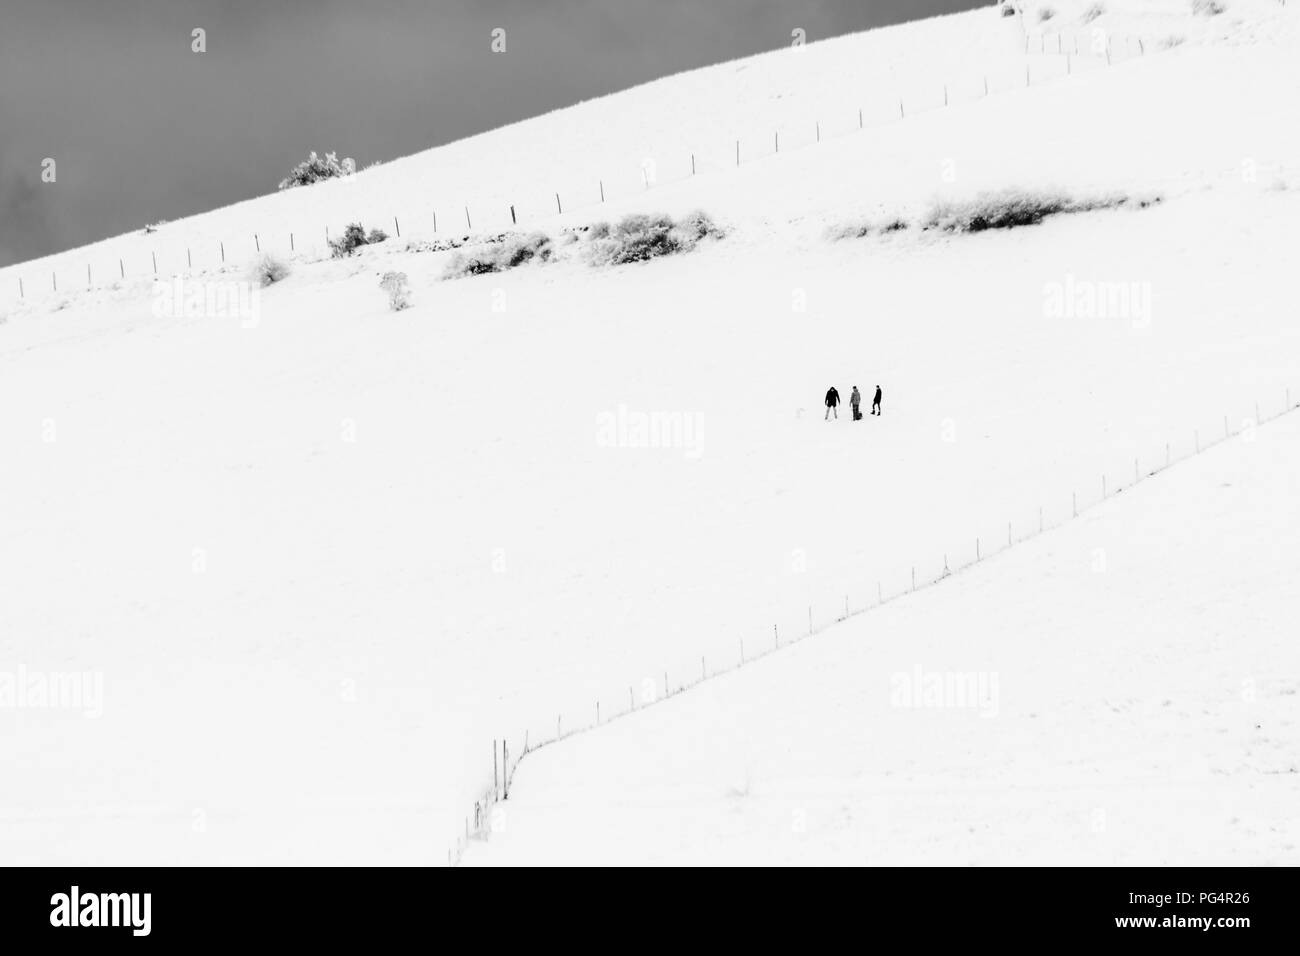 Einige Personen in der Mitte Schnee auf einem Berg, in der Nähe einige Zäune Stockfoto